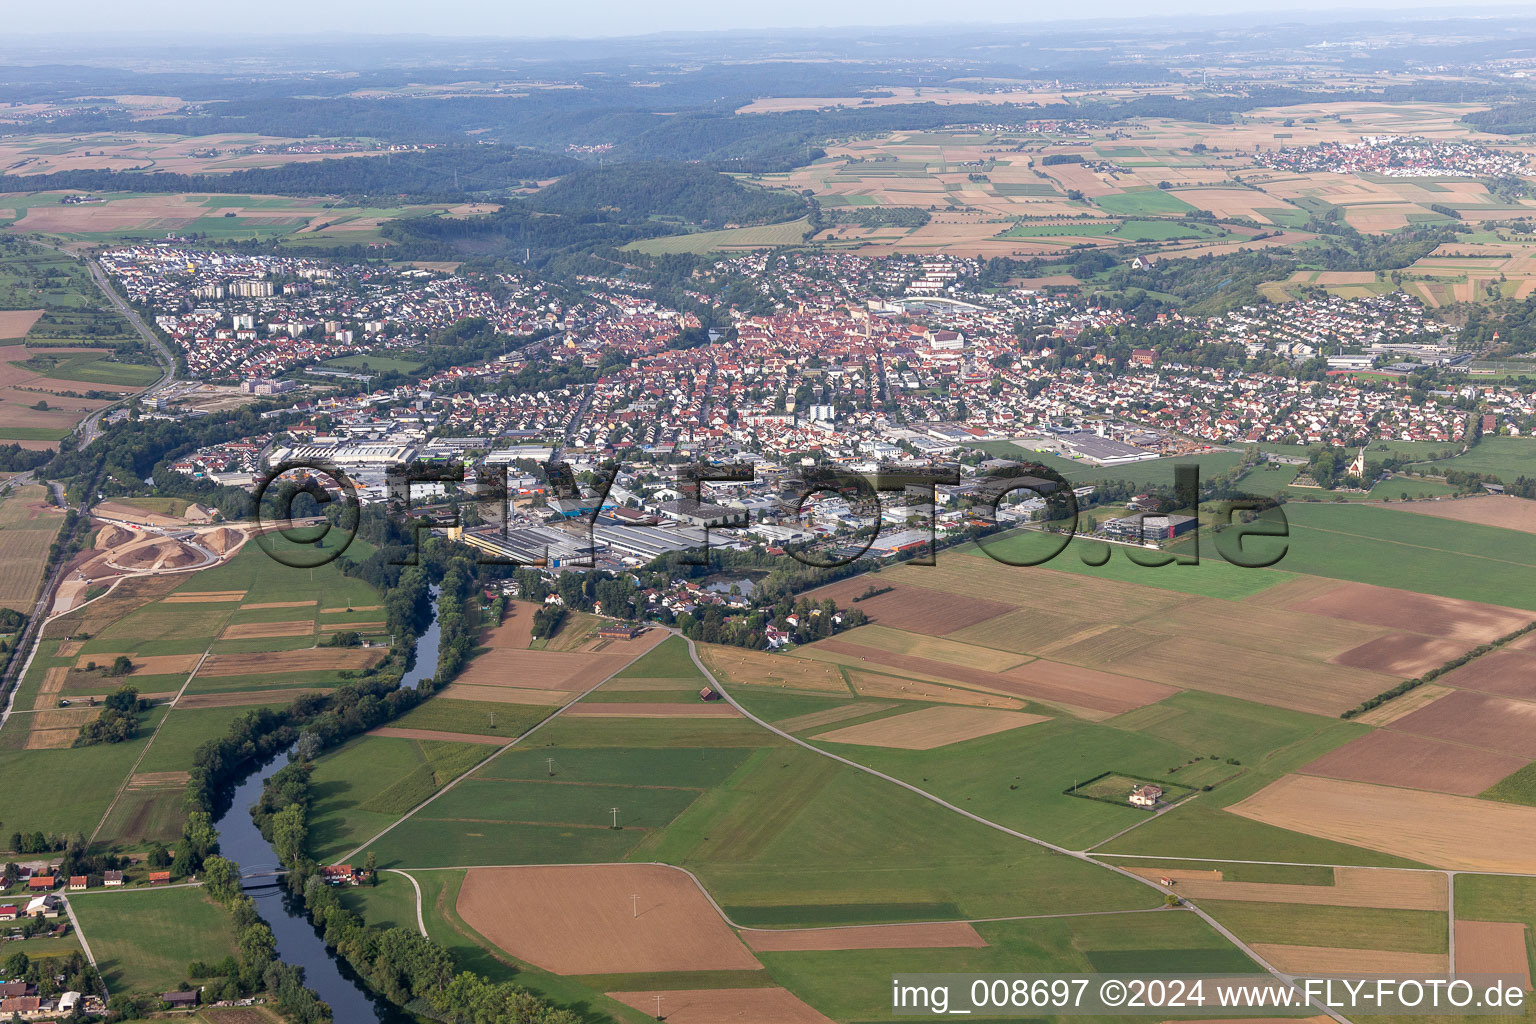 Vue aérienne de Zone urbaine avec périphérie et centre-ville à Rottenburg am Neckar dans le département Bade-Wurtemberg, Allemagne